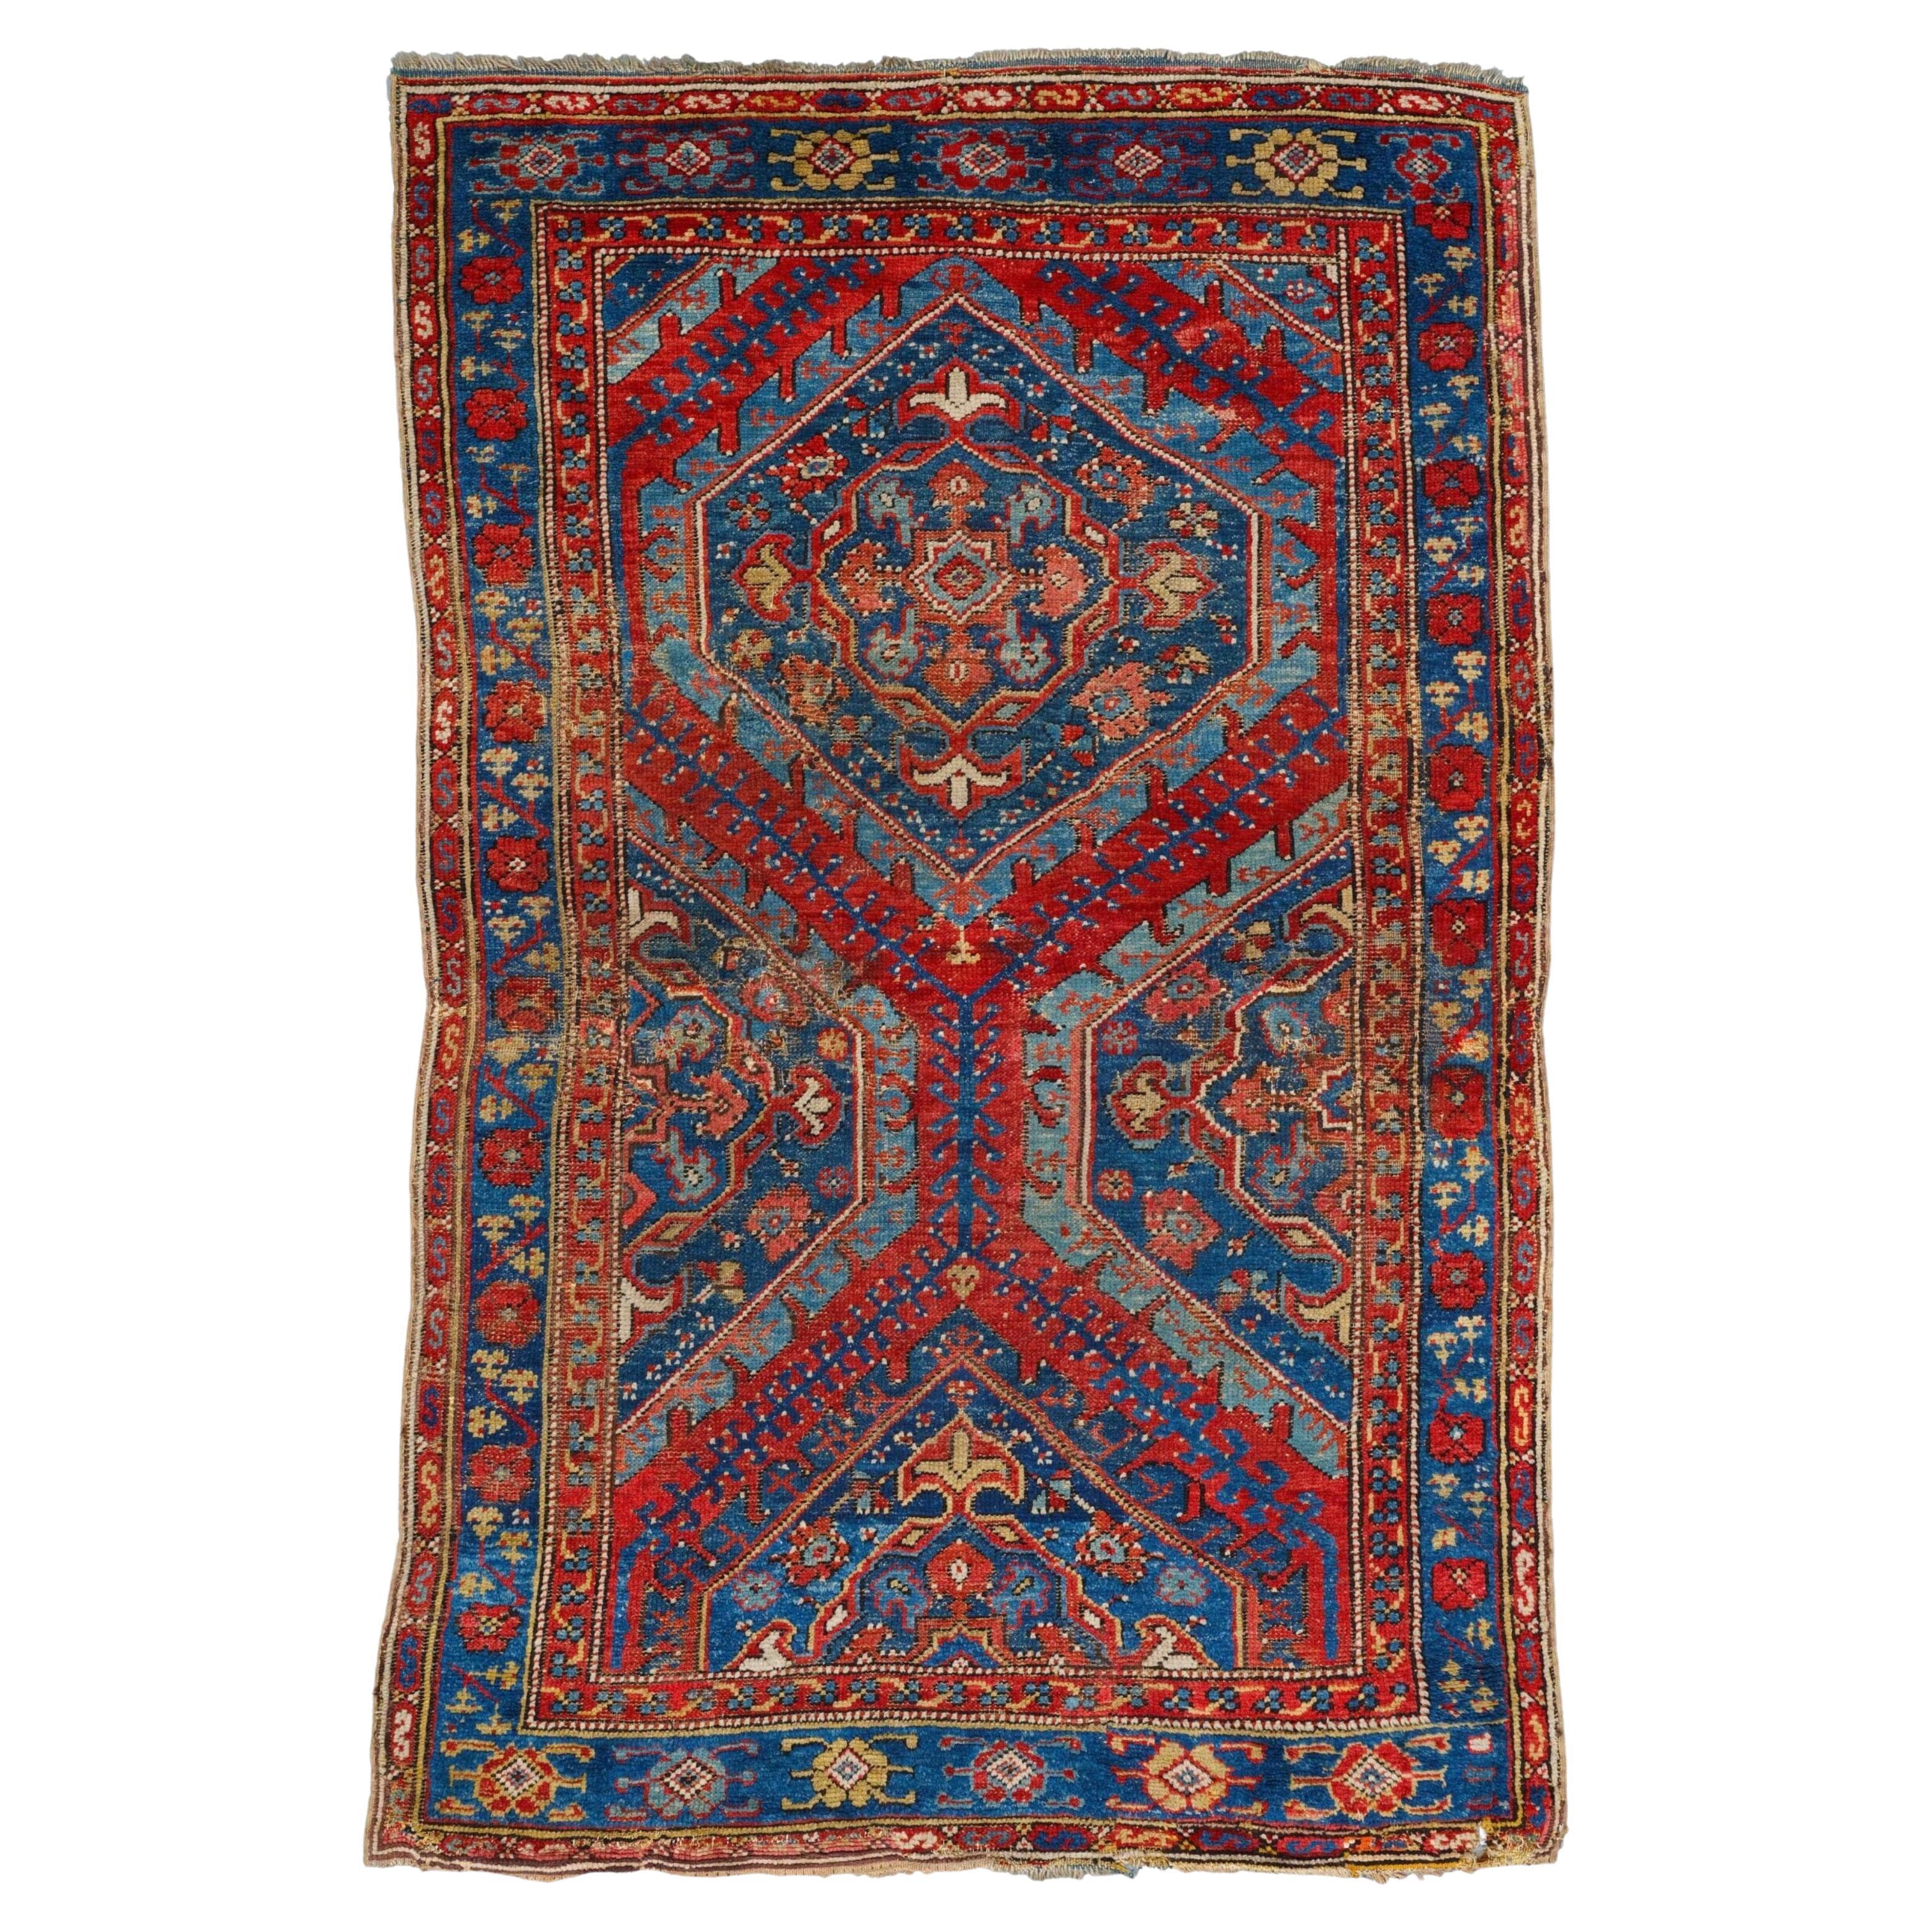 Antique Ushak Rug - Early 18th Century Anatolian Ushak Rug, Antique Carpet For Sale